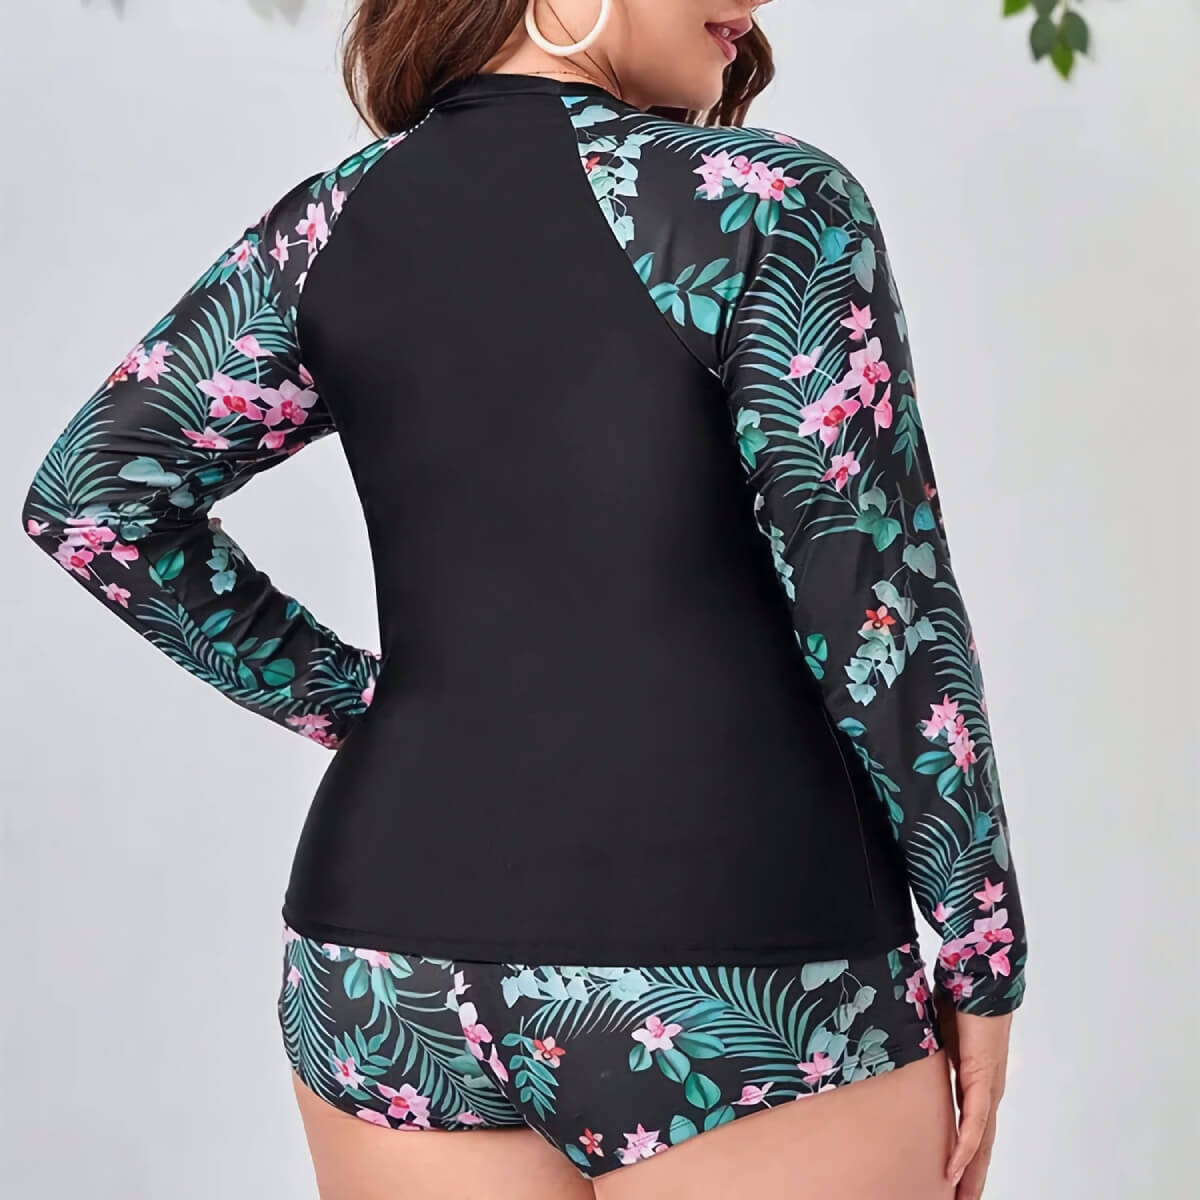 Plus Size Swimwear Women Printed Long Sleeve Swimsuit Two Piece